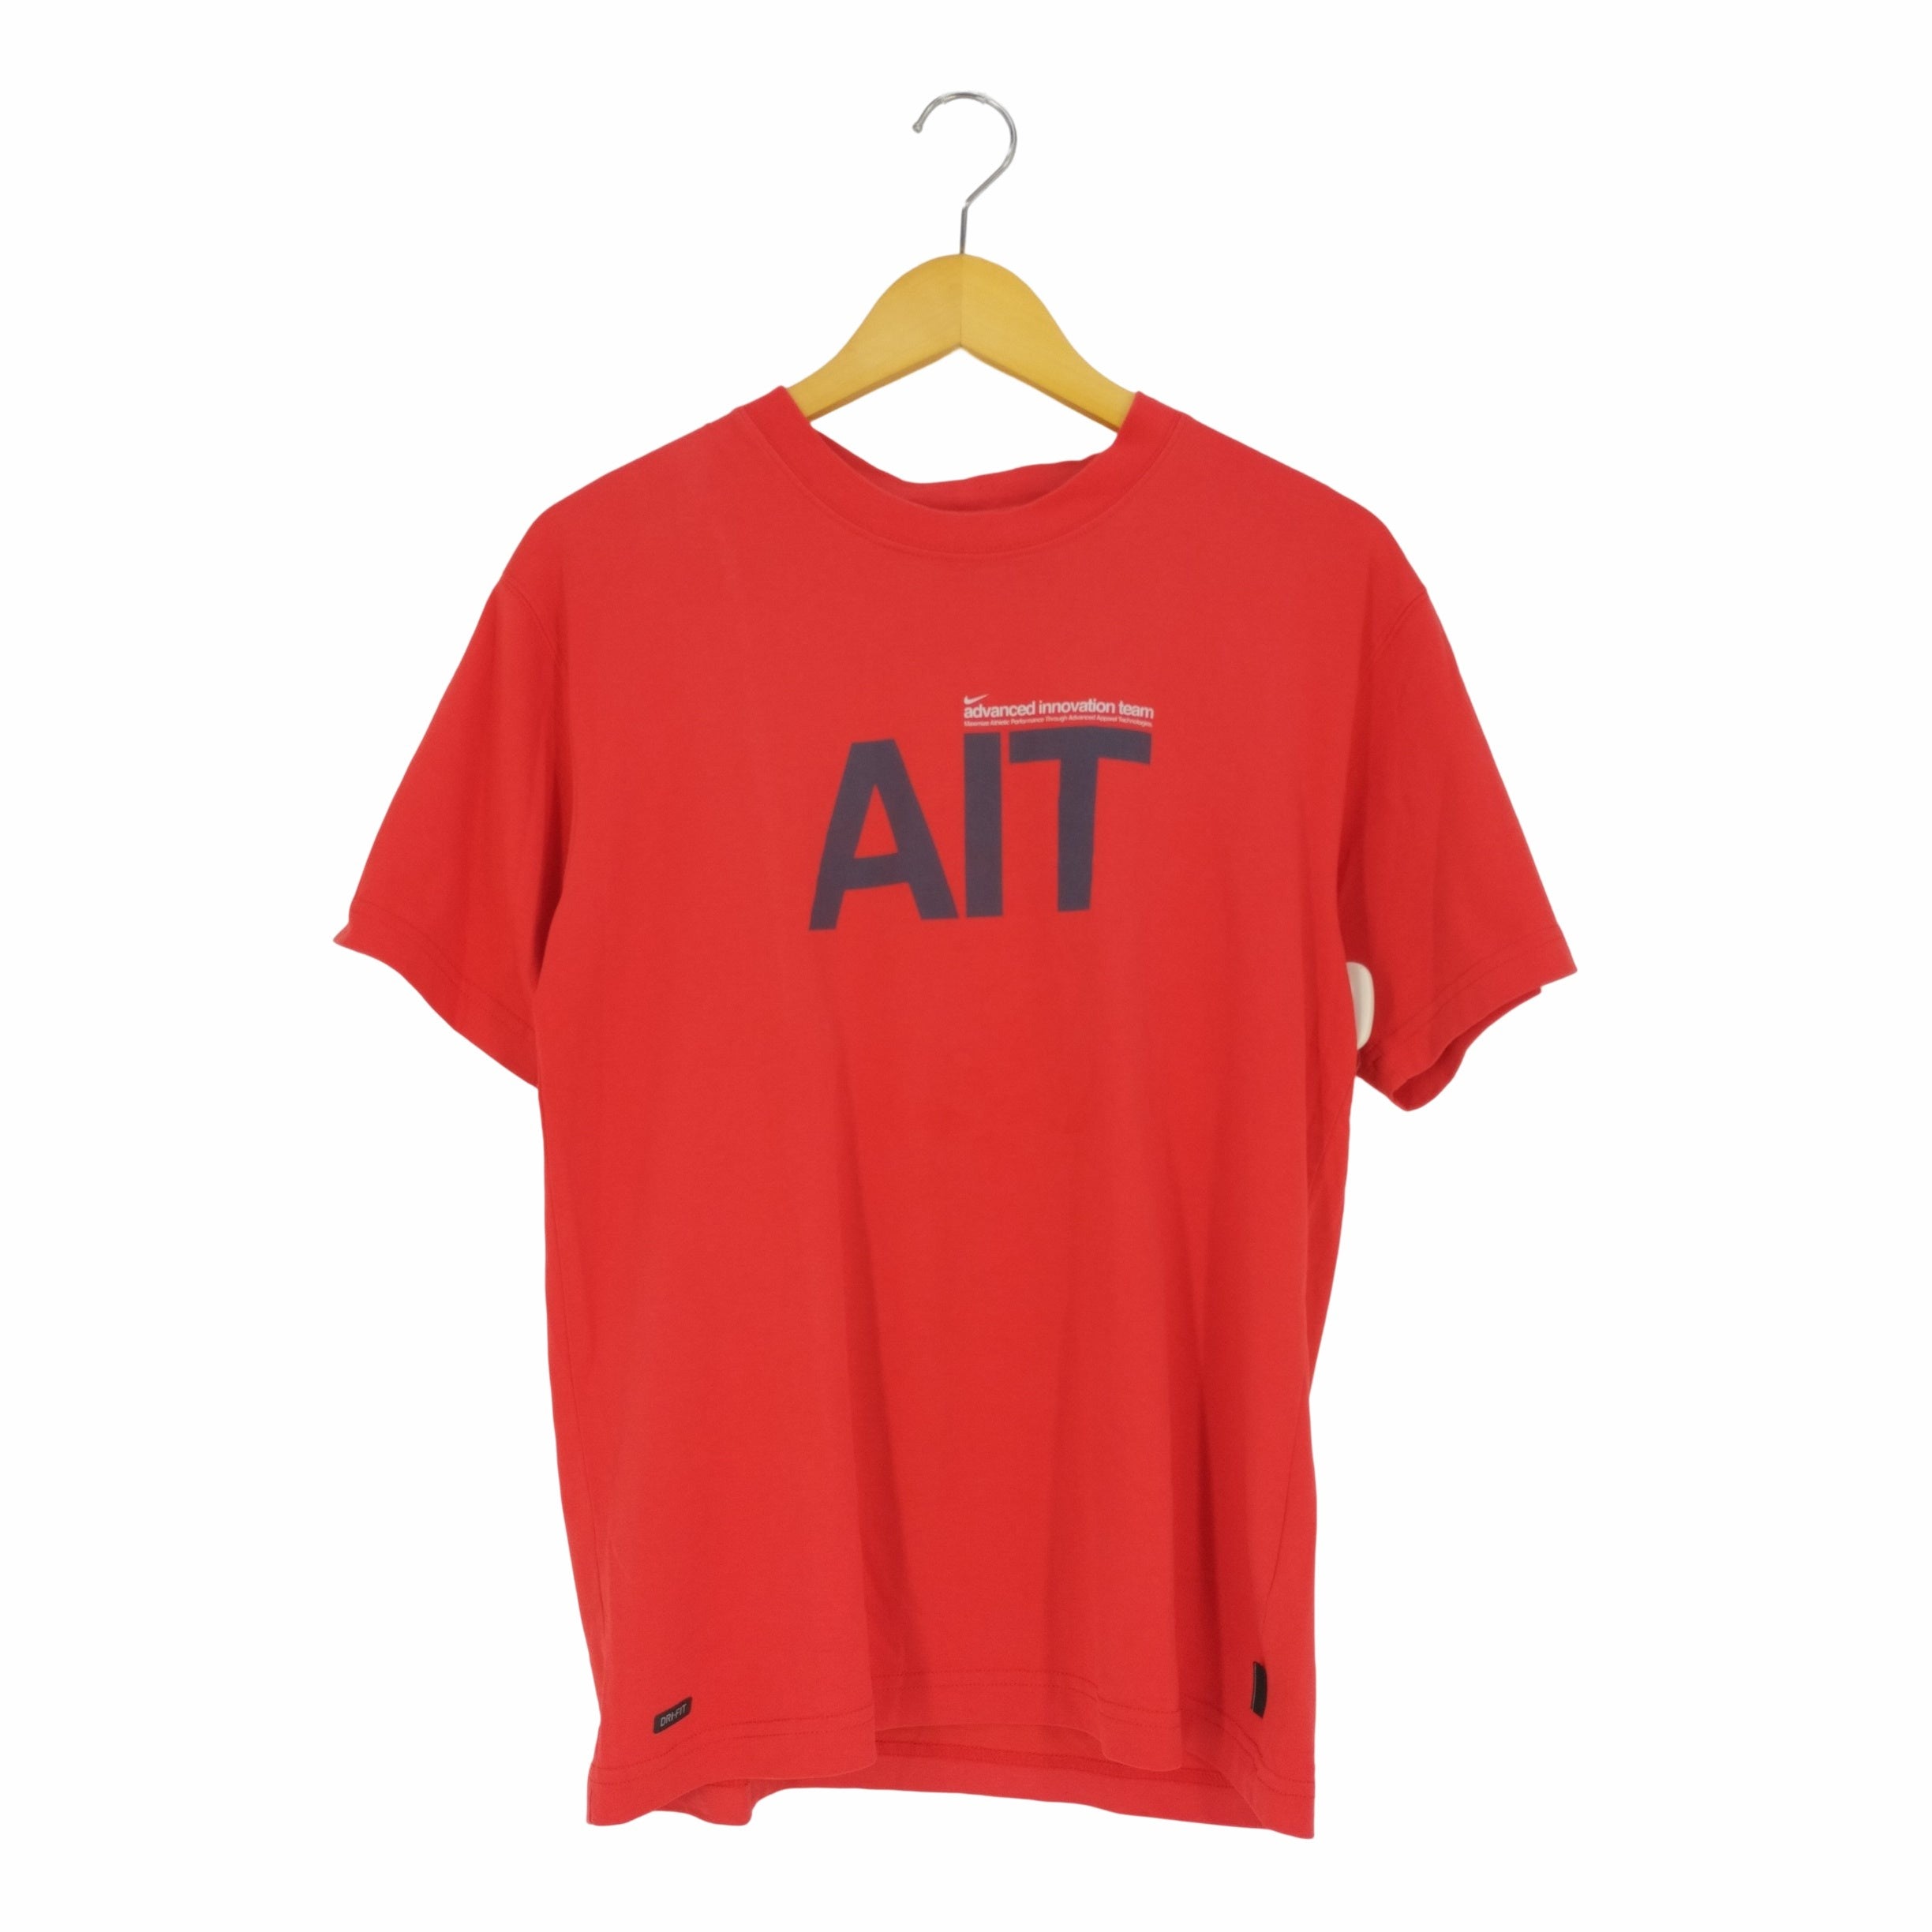 ナイキ NIKE advanced innovation team AIT クルーネックTシャツ